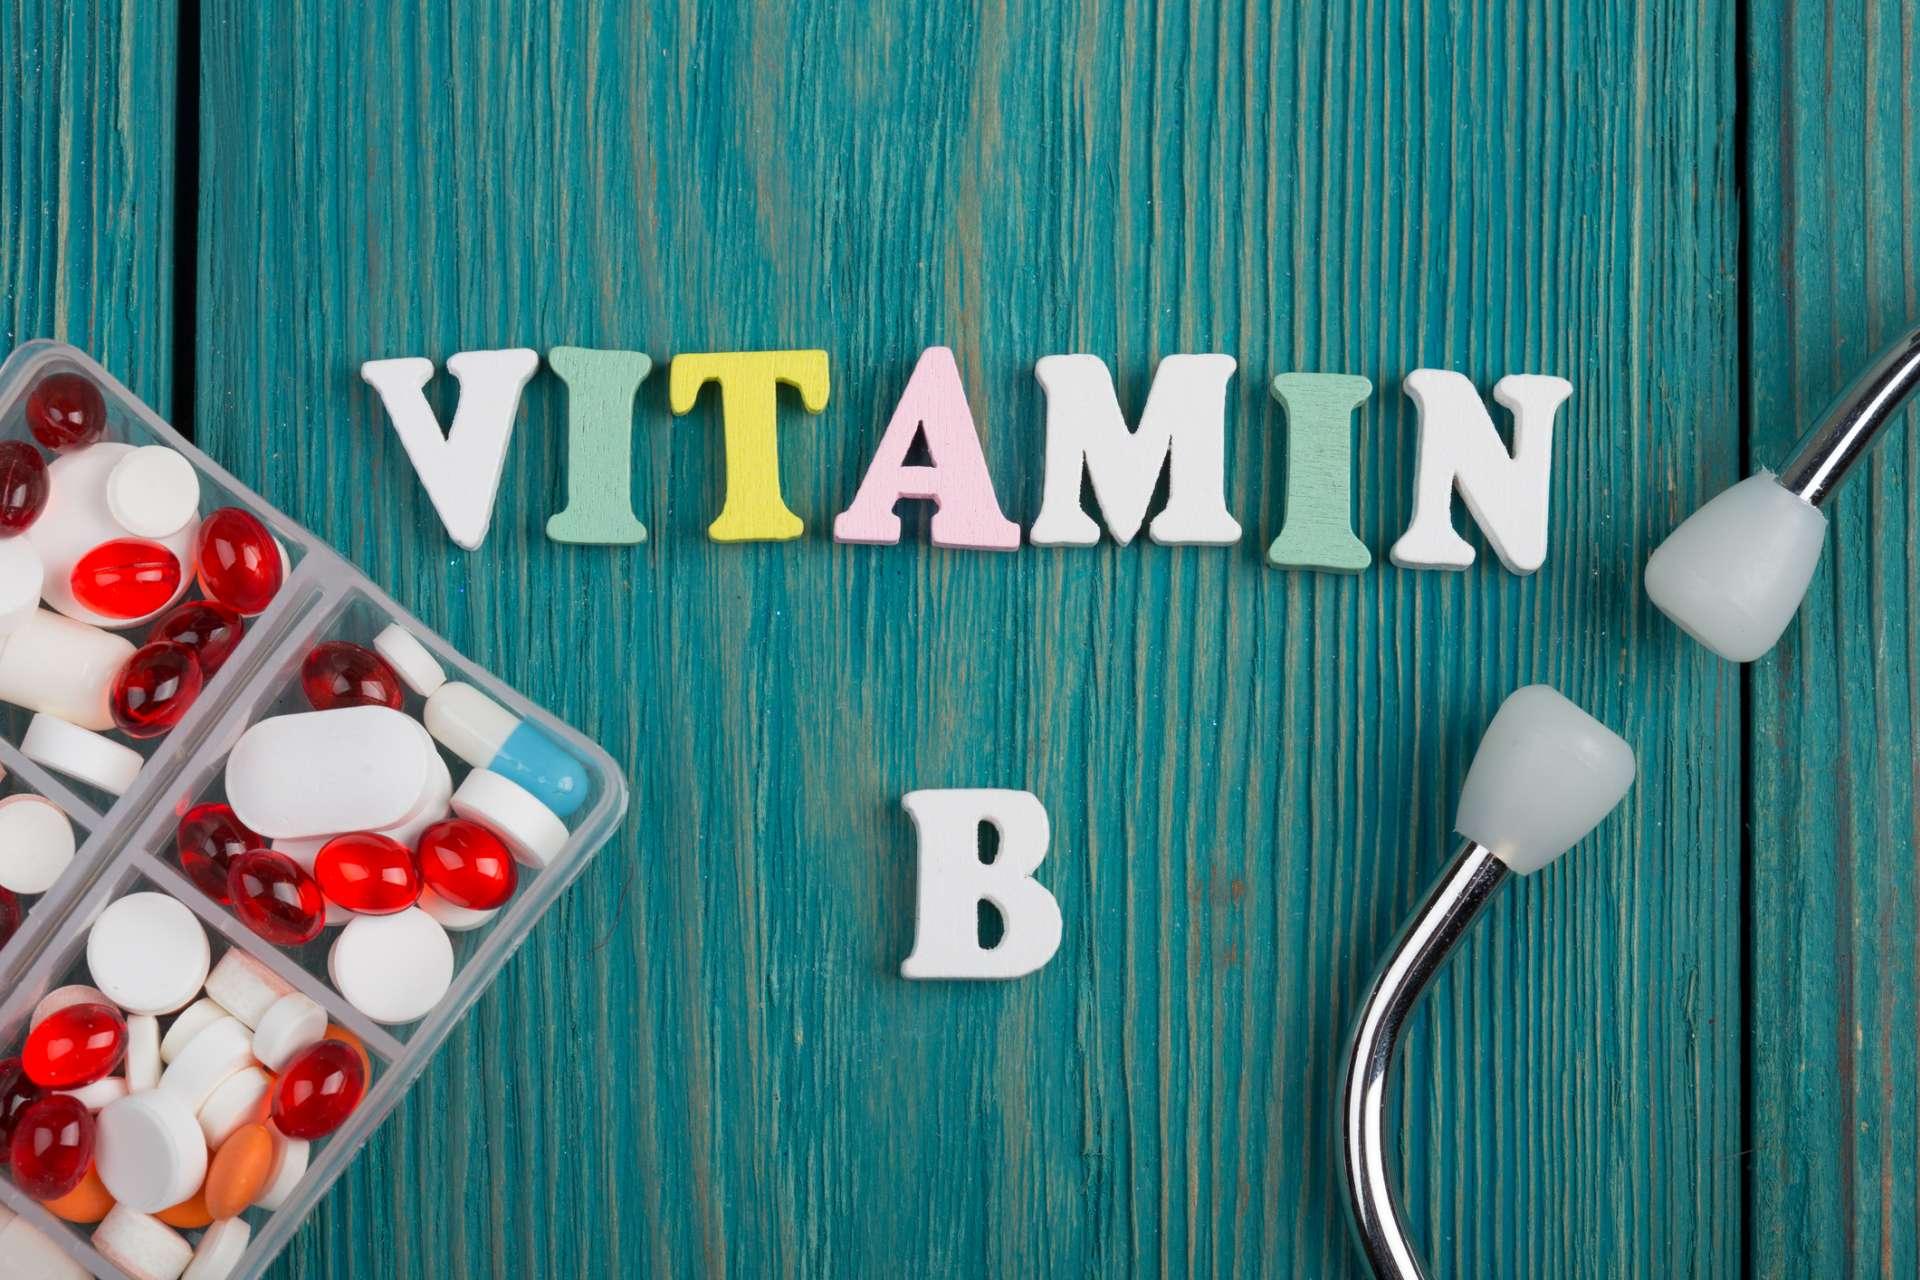 Text "Vitamin B" aus farbigen Holzbuchstaben, Stethoskop und Pillen auf blauem Holzhintergrund